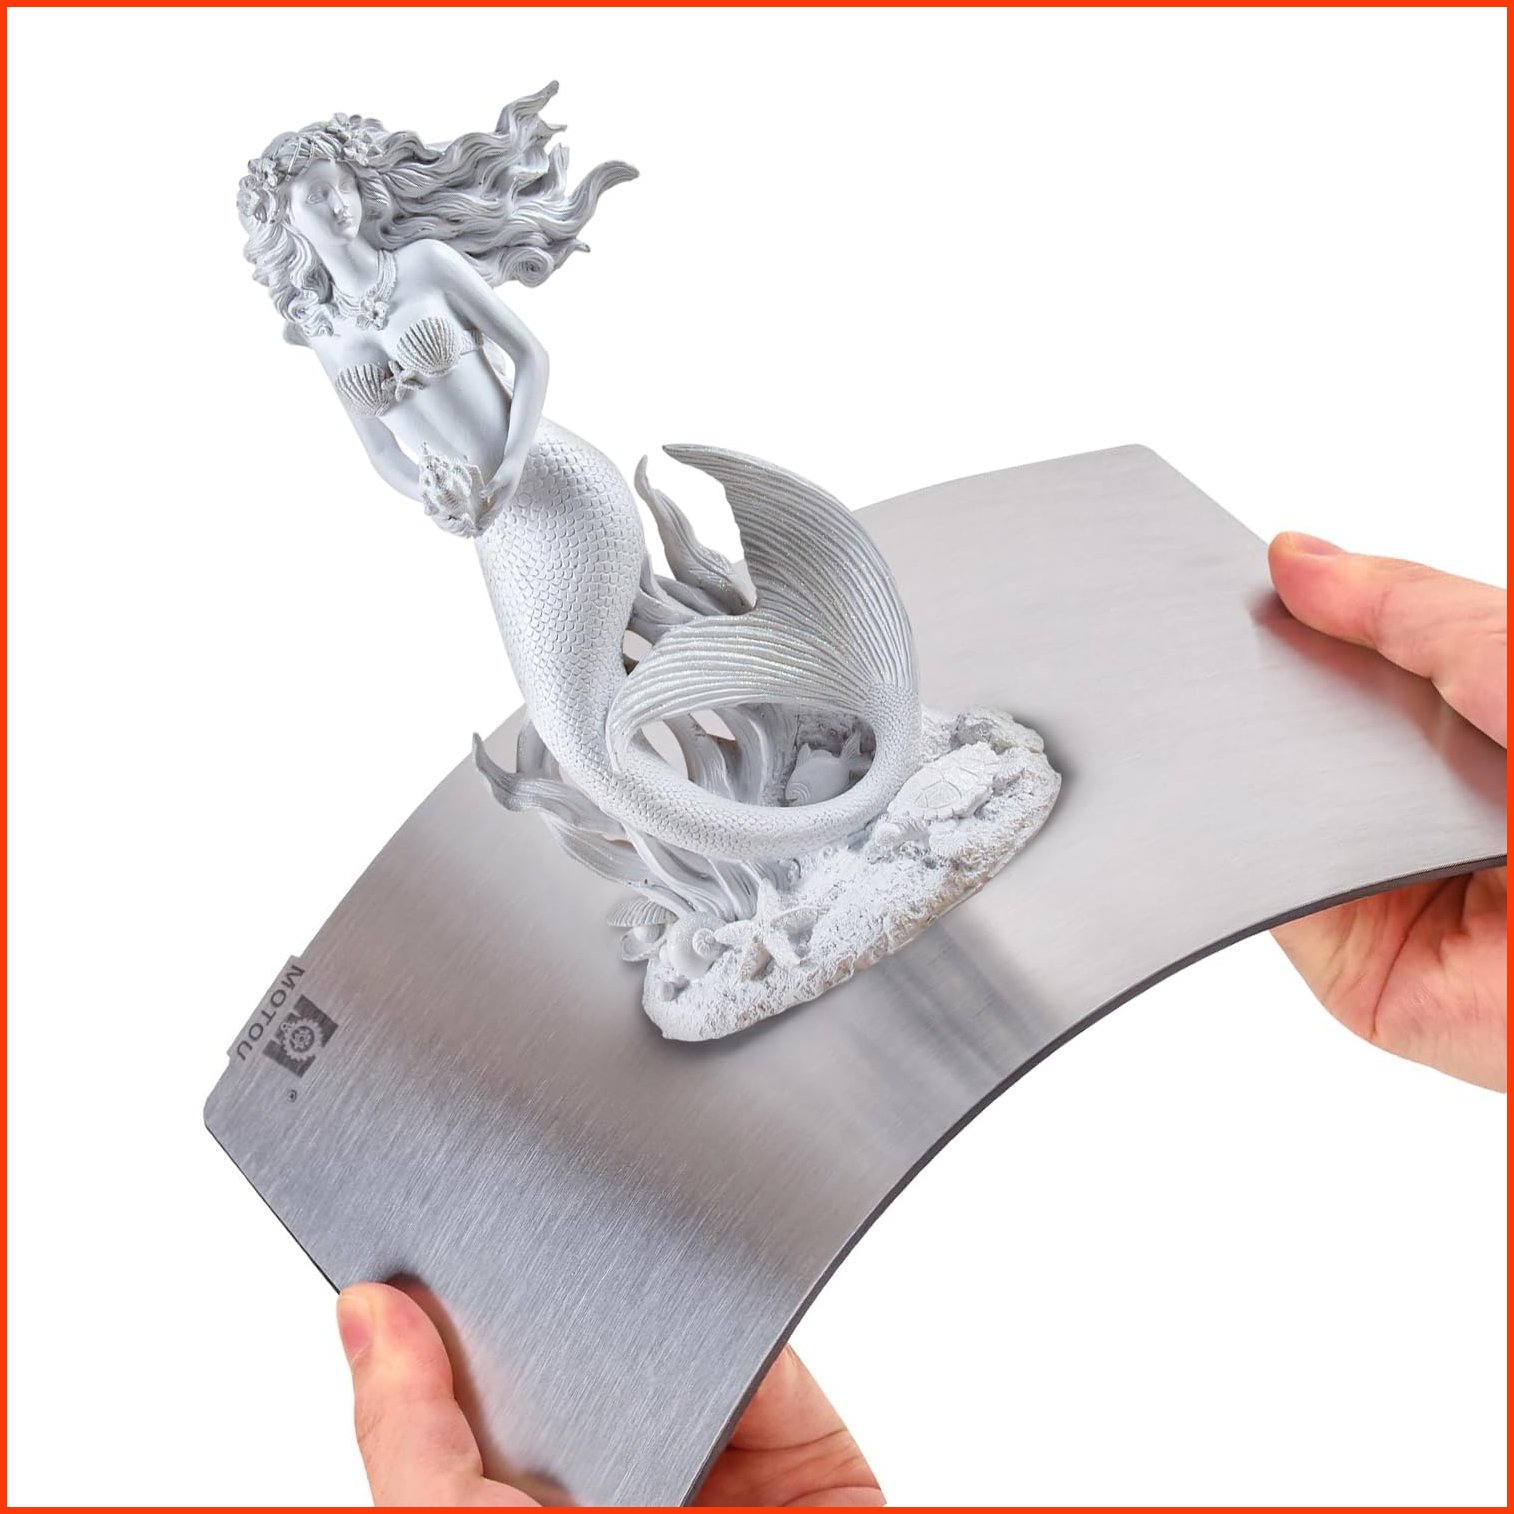 並行輸入品MOTOU 225128mm Resin 3D Printer Flex Build Plate Magnetic Base Platform for Anycubic M5S M3 Premium E